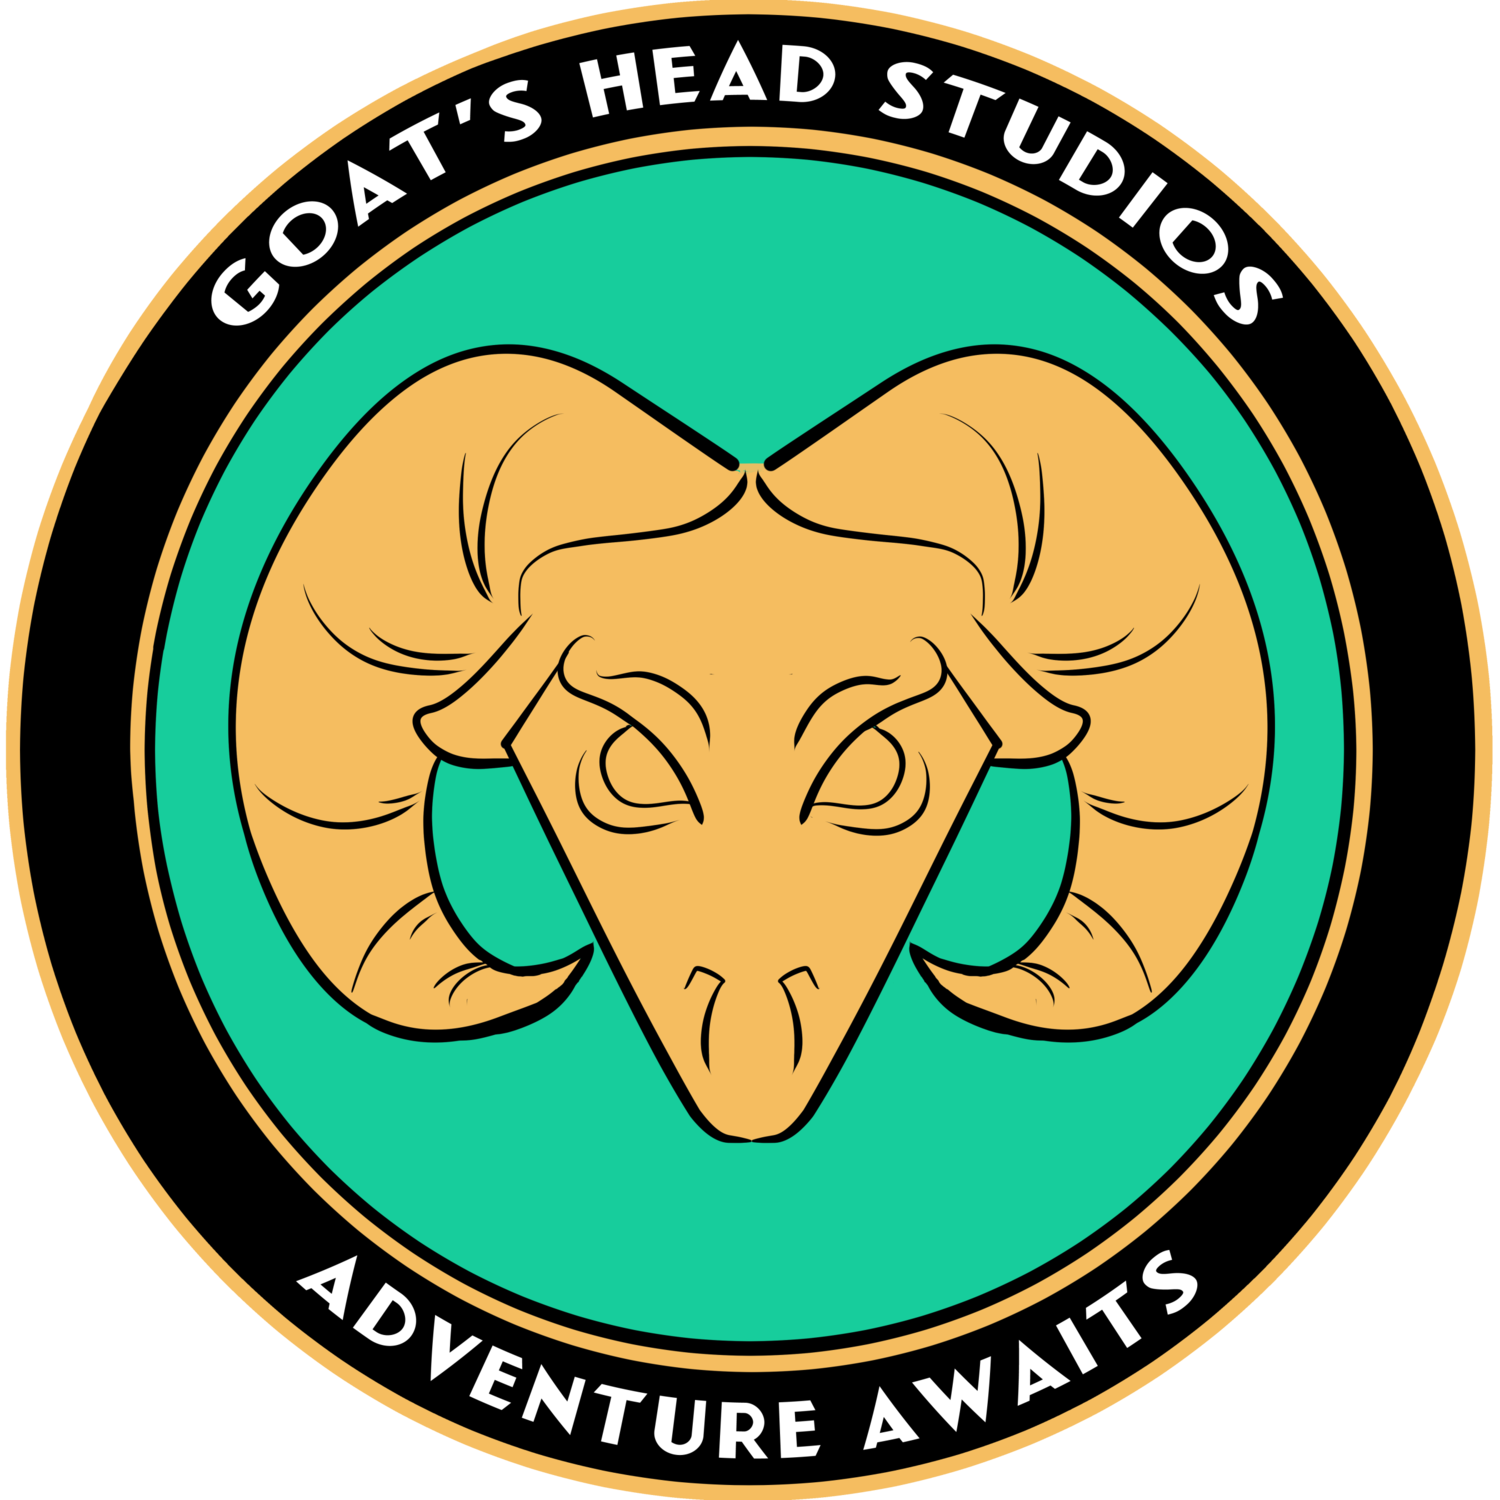 Goats Head Studios